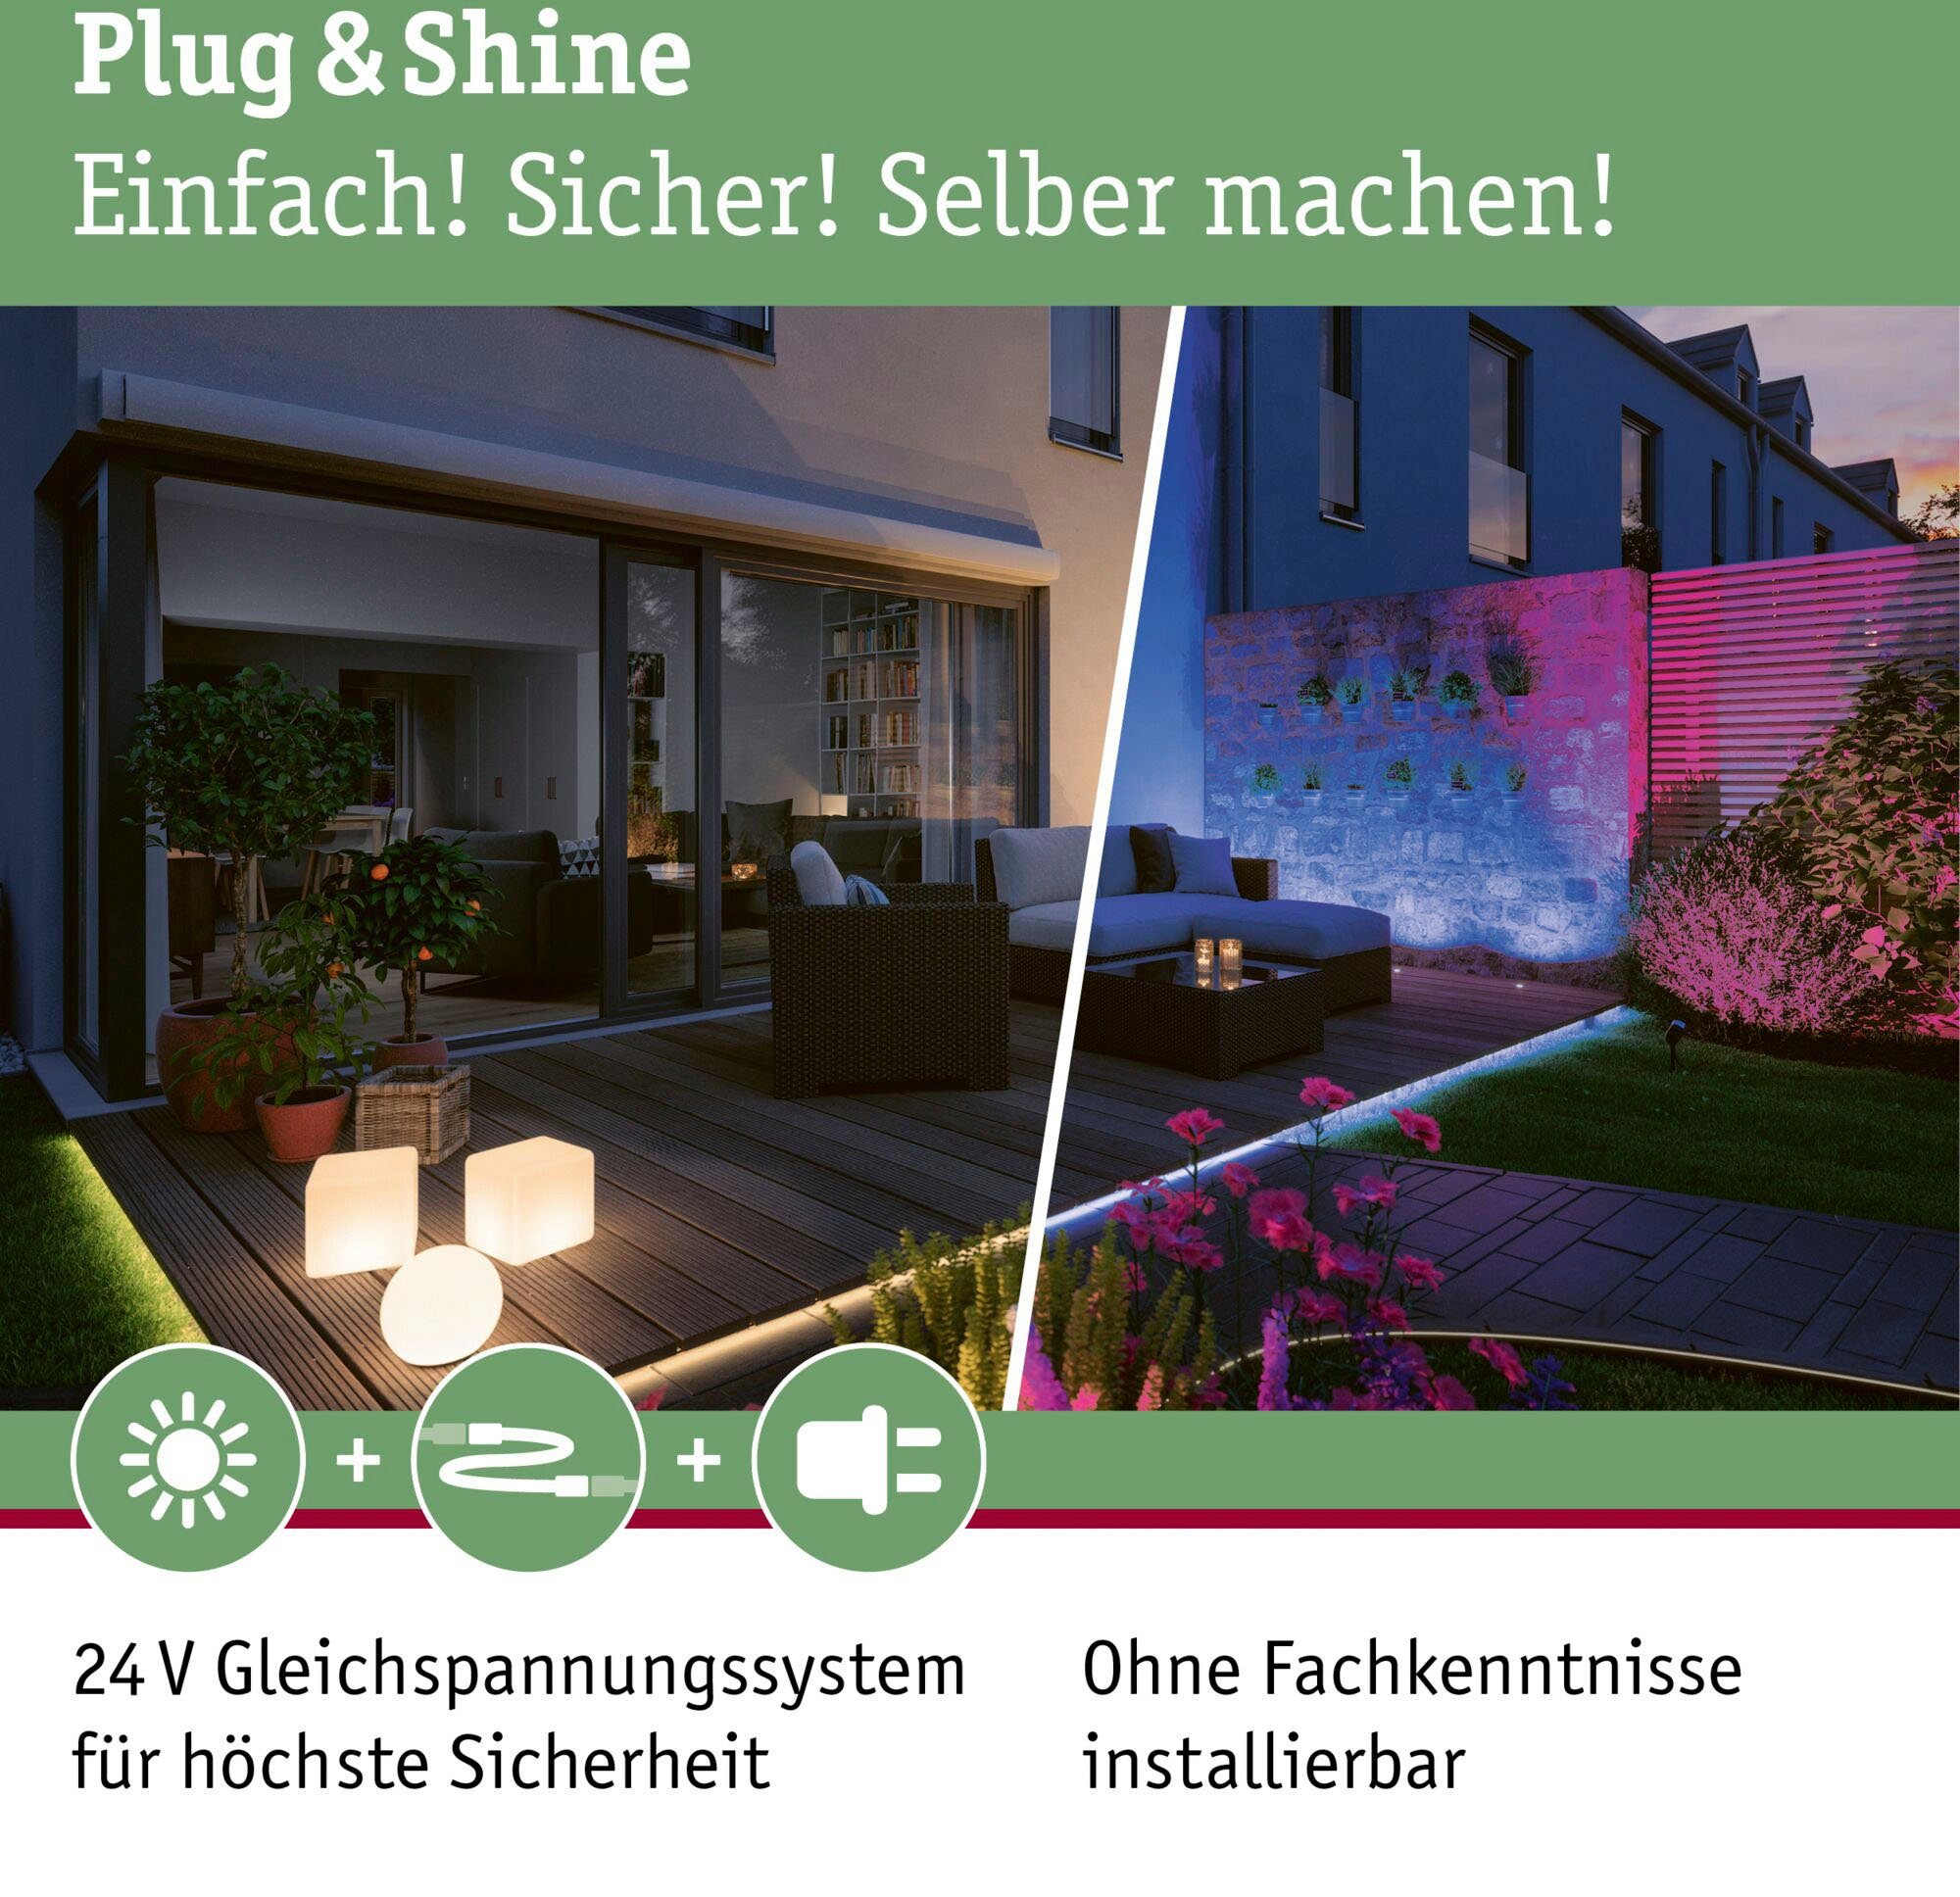 3000K & 24V LED LED Paulmann Shine, Plug Warmweiß, Shine, integriert, Plug fest Gartenstrahler & Anthrazit IP65 LED-Modul,